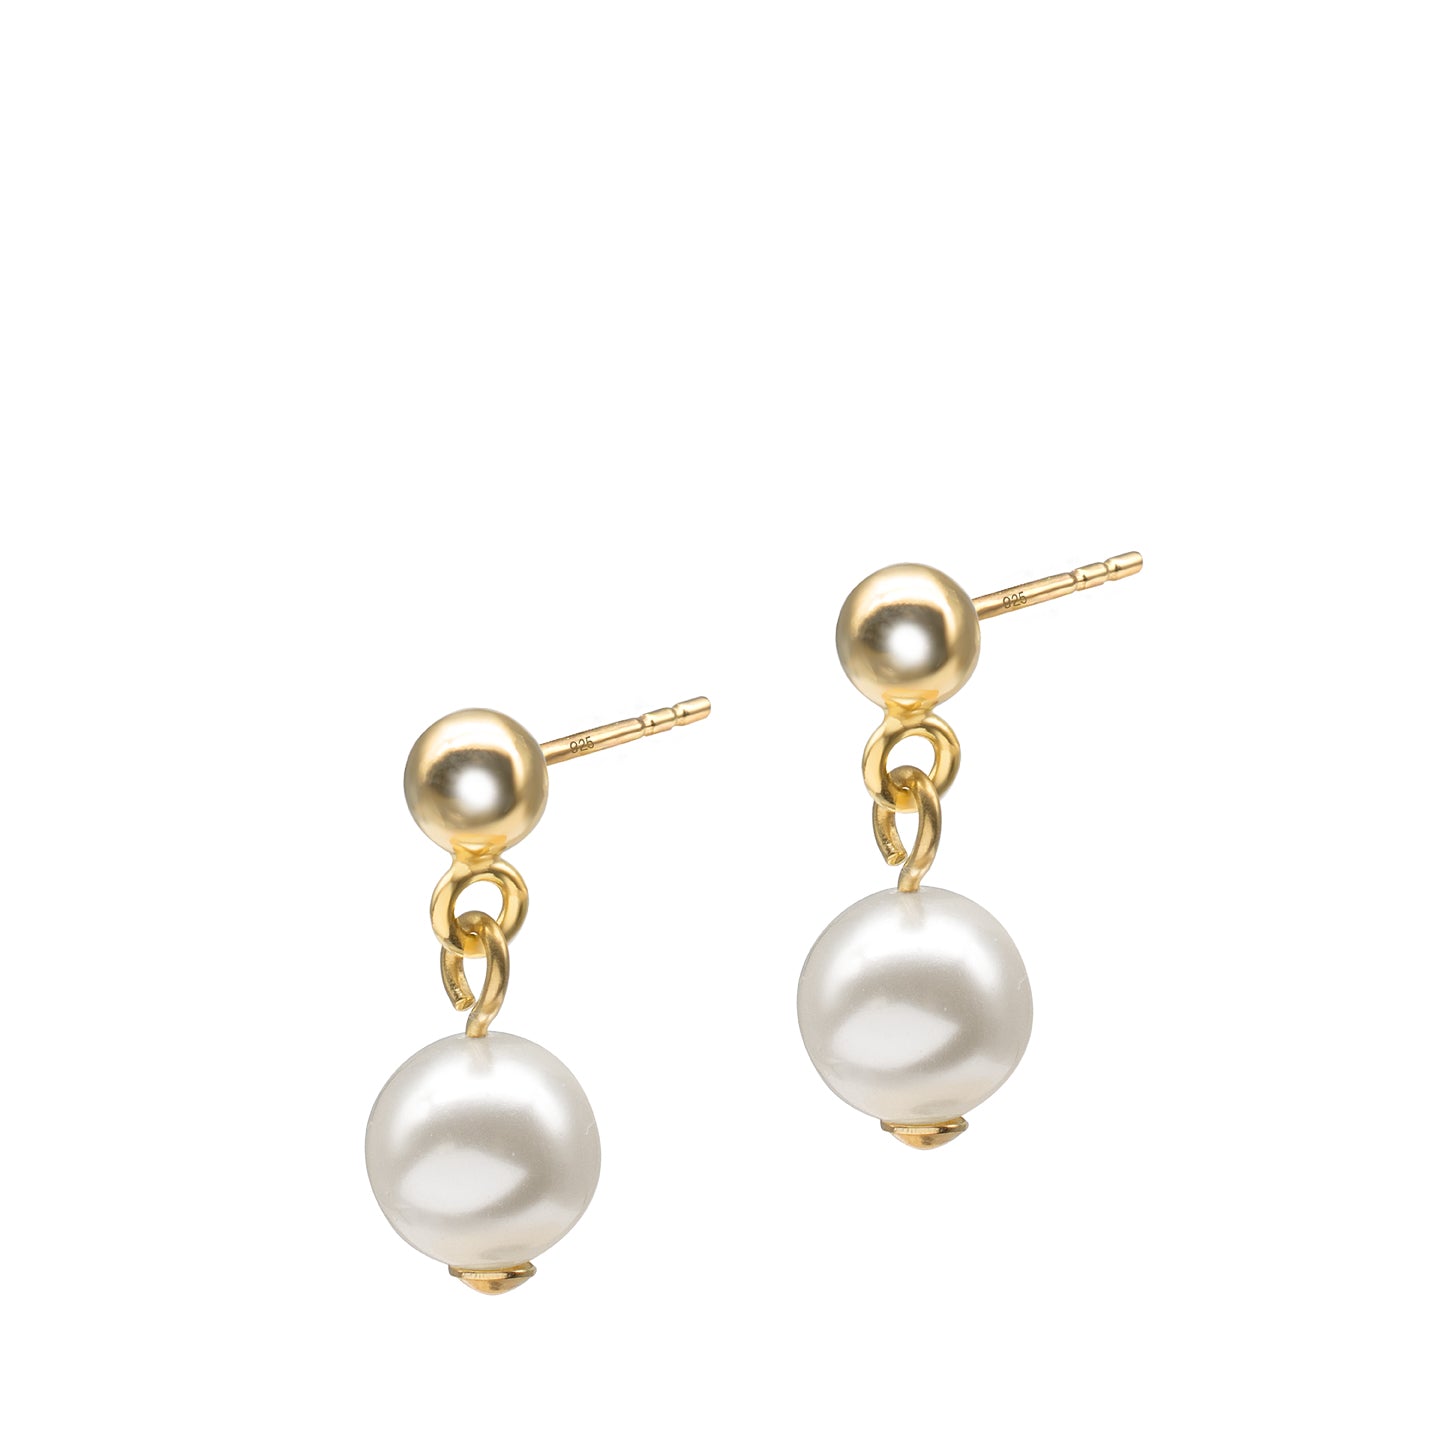 Cercei perle argint Pur Blanca - placati aur galben 18K